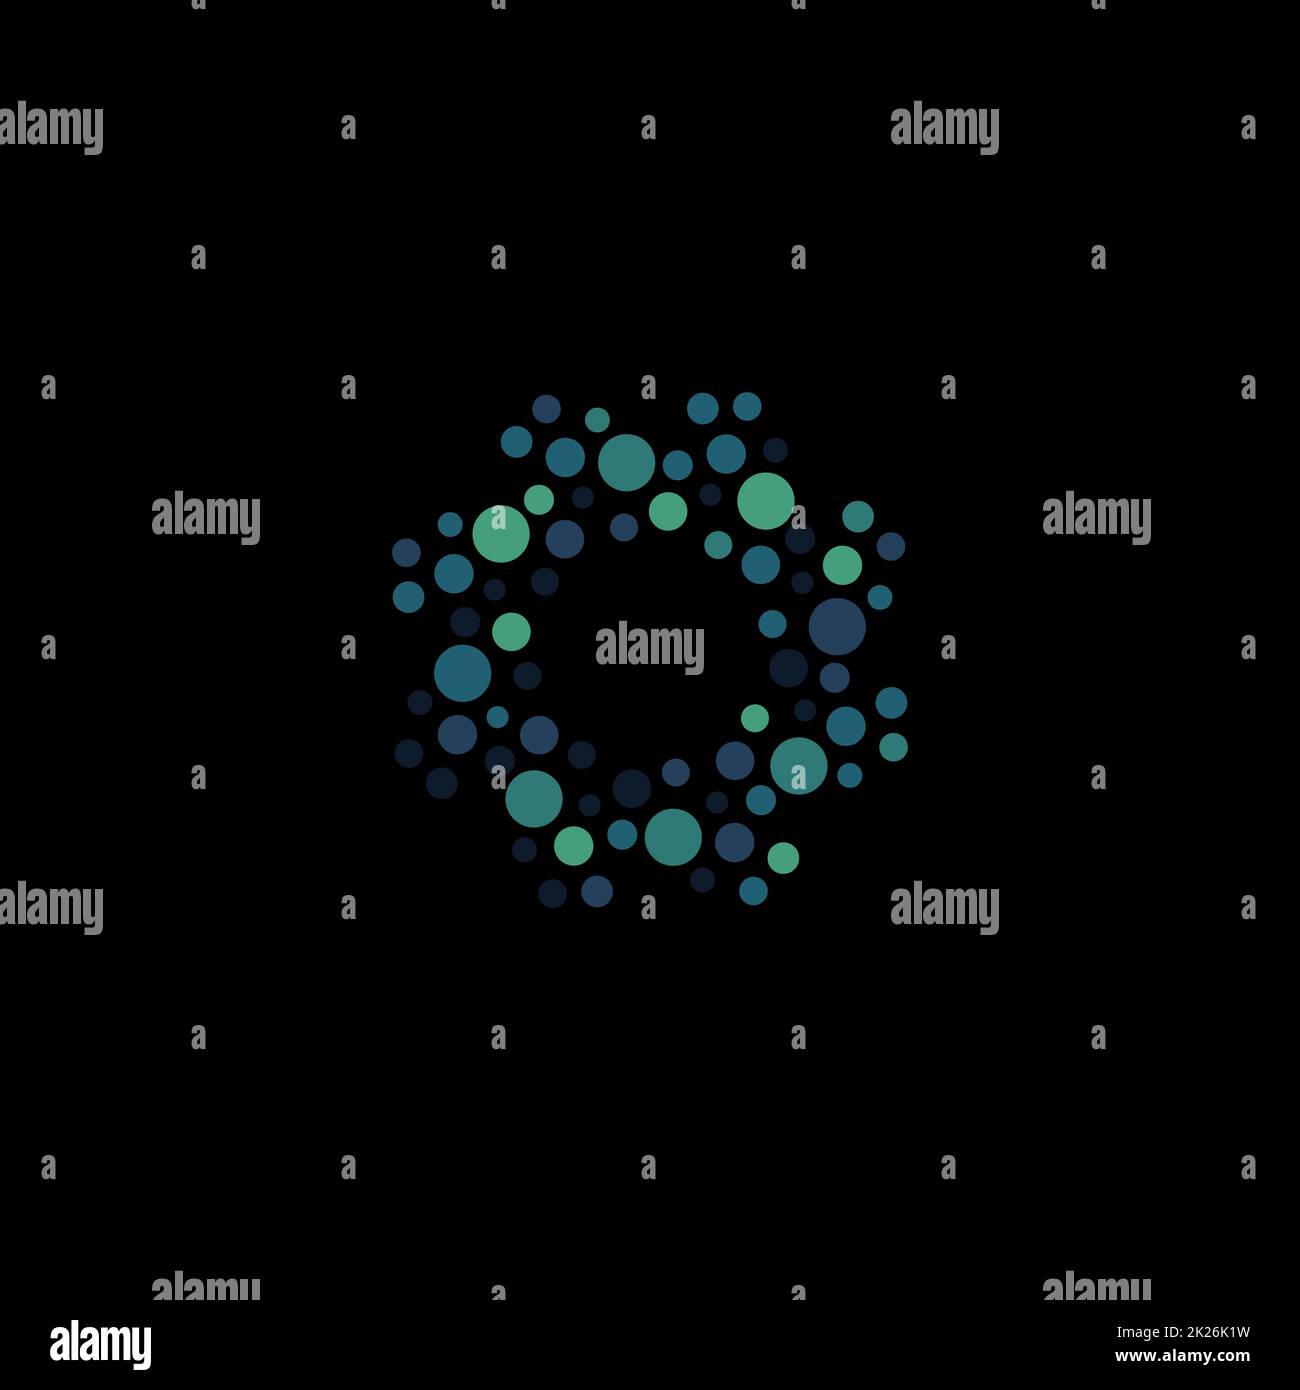 Isoliertes, abstraktes, rundes blaues Logo, gepunktetes Logo, Vektordarstellung für Wasserelemente auf schwarzem Hintergrund Stockfoto